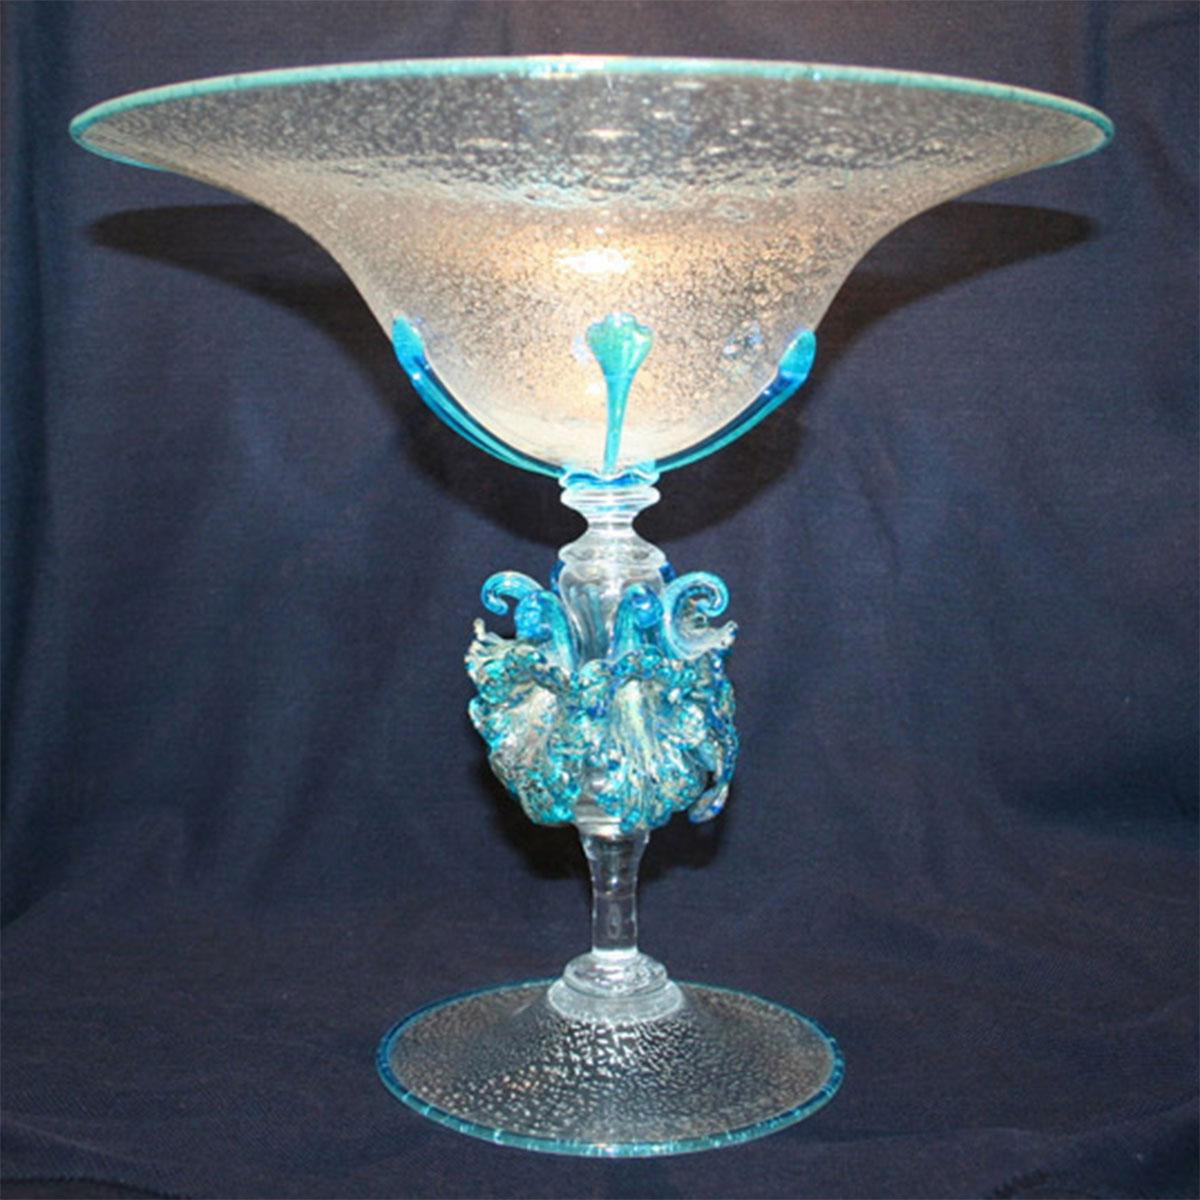 "Celestina" Murano glass fruitstand - light blue